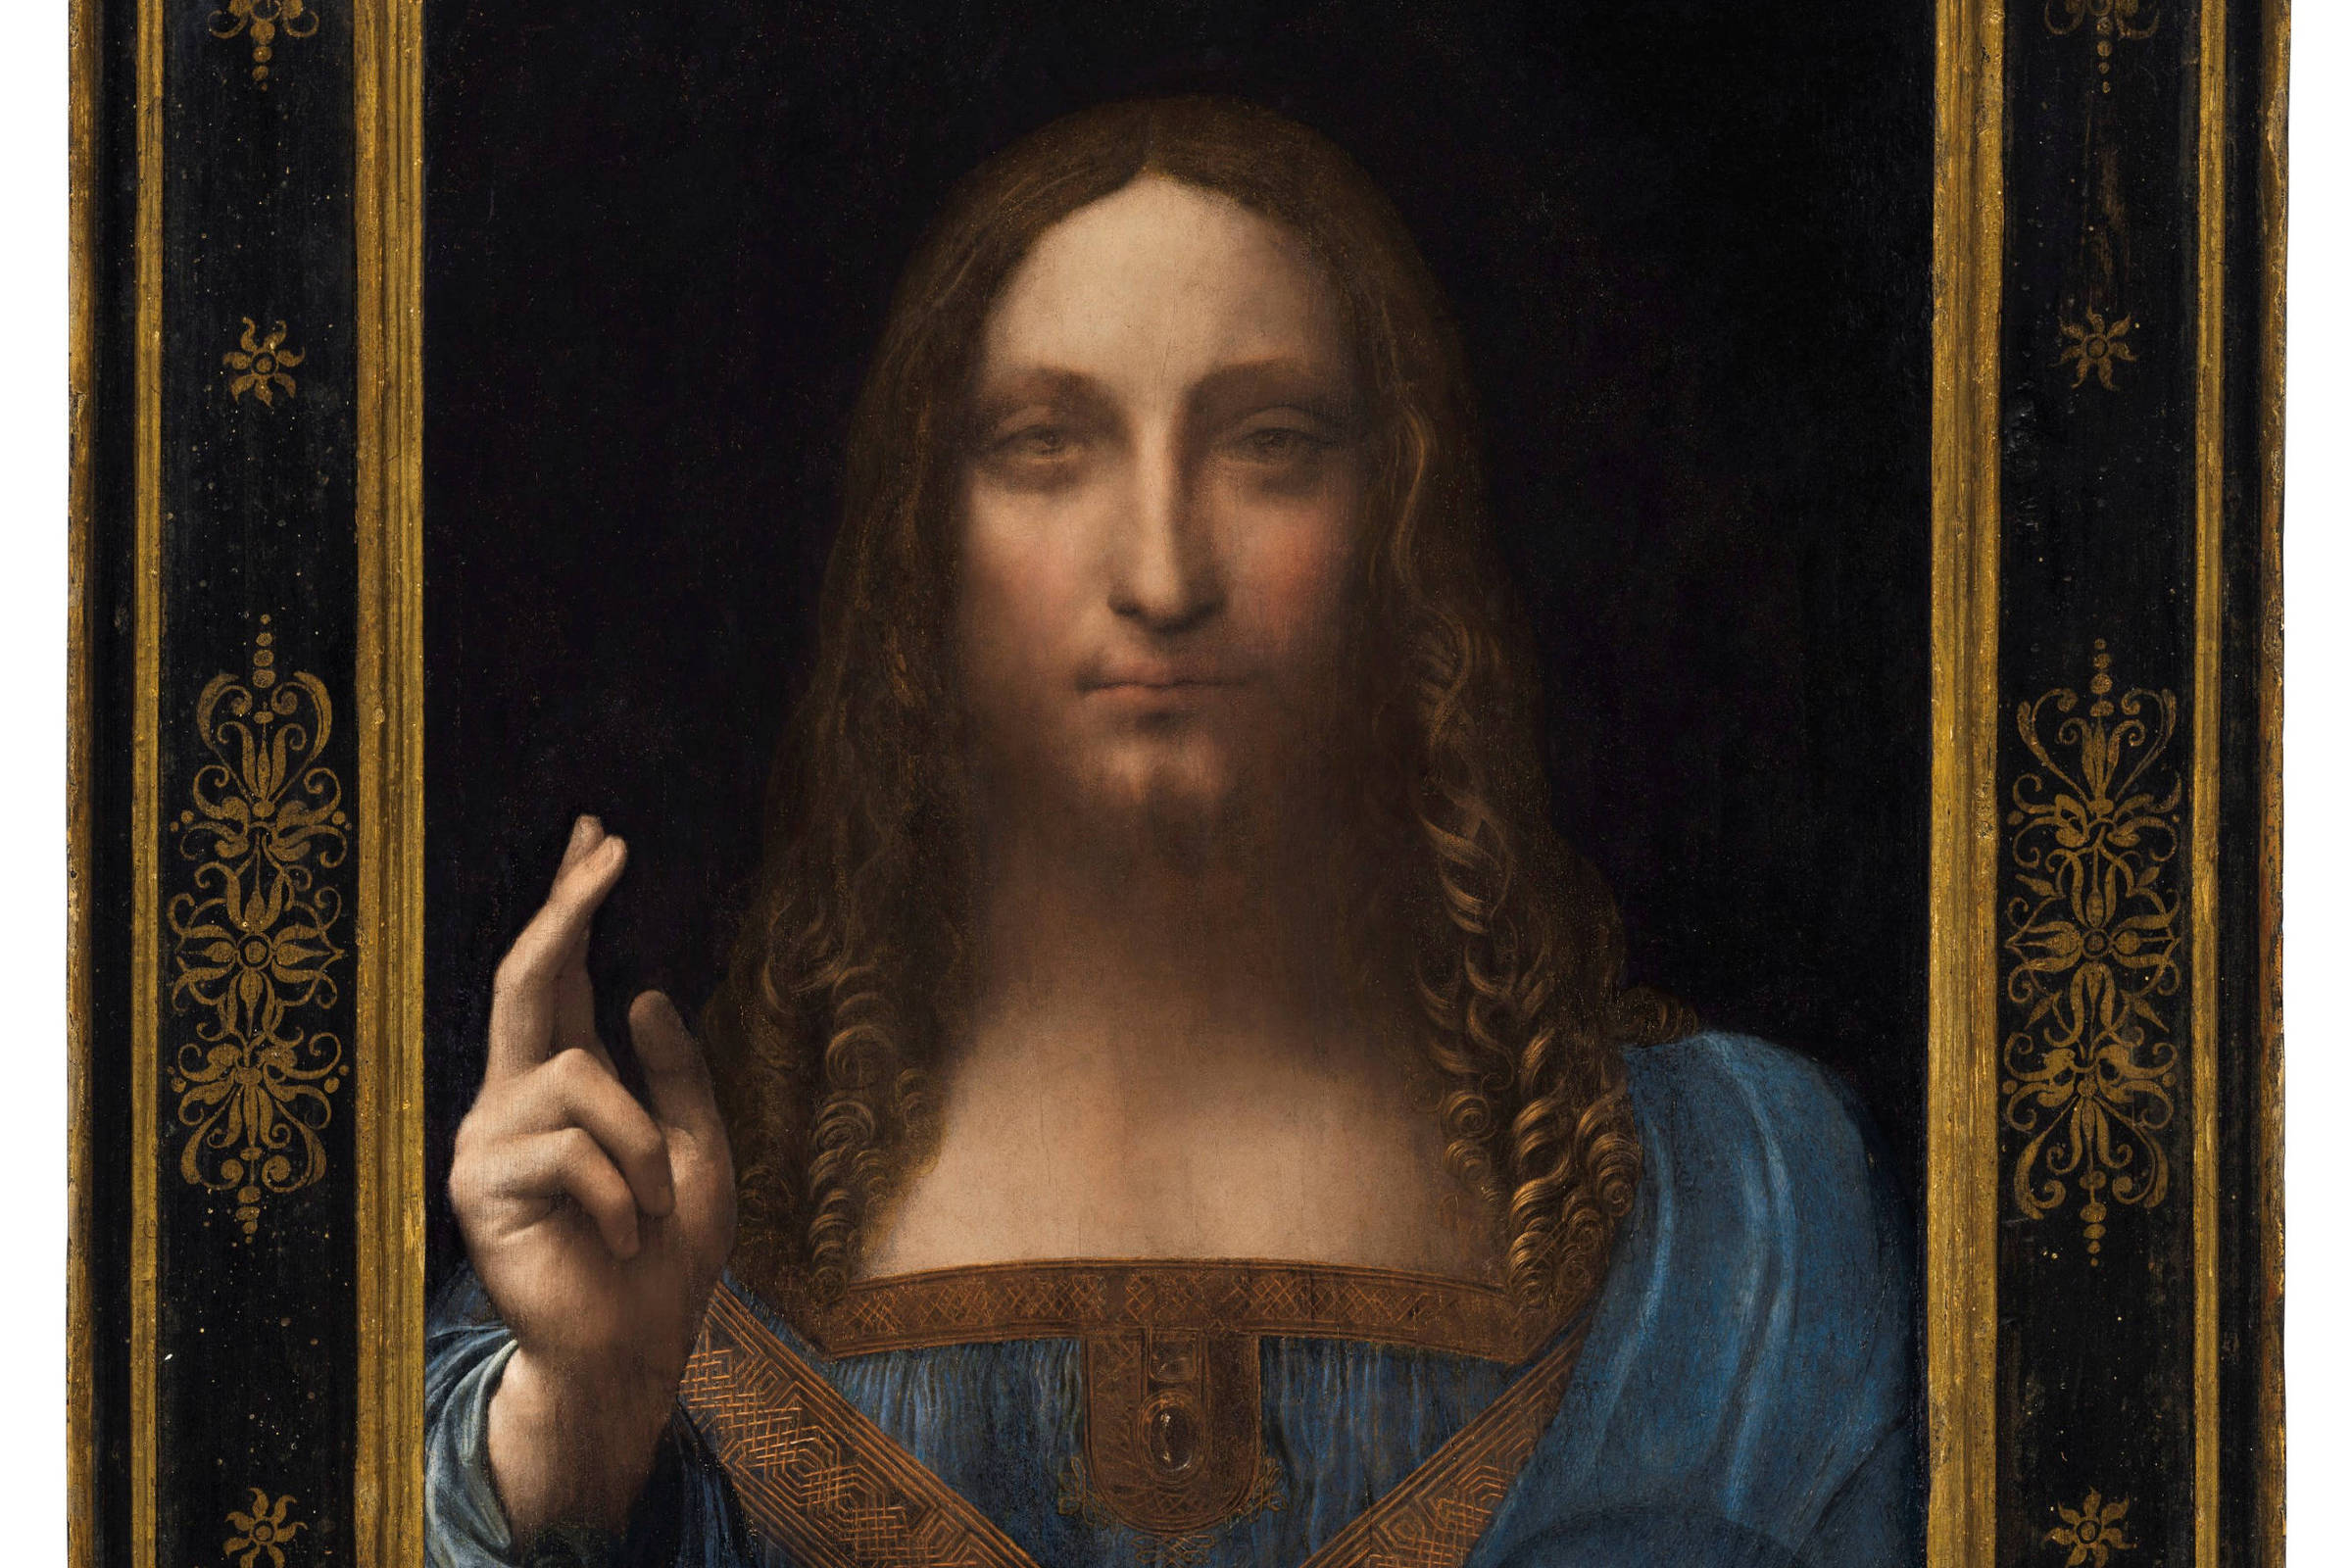 Leonardo da Vinci segue cercado de mistérios mesmo morto há exatos 5